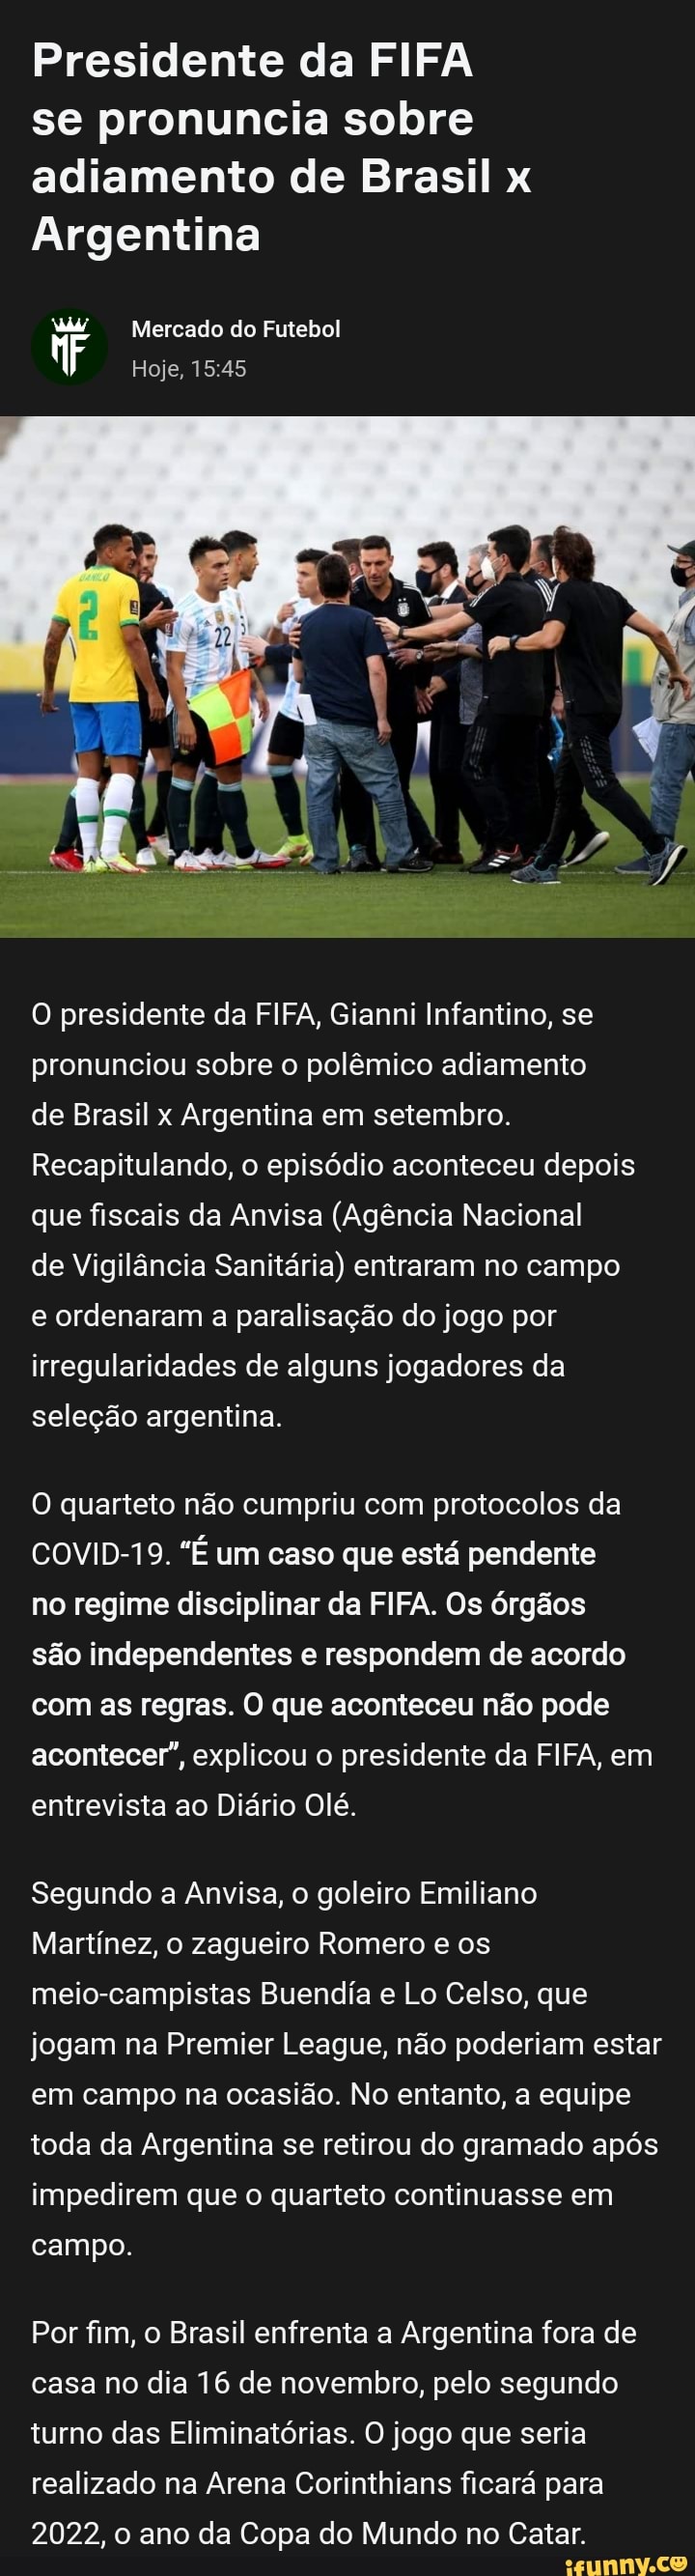 Presidente da FIFA se pronuncia sobre adiamento de Brasil x